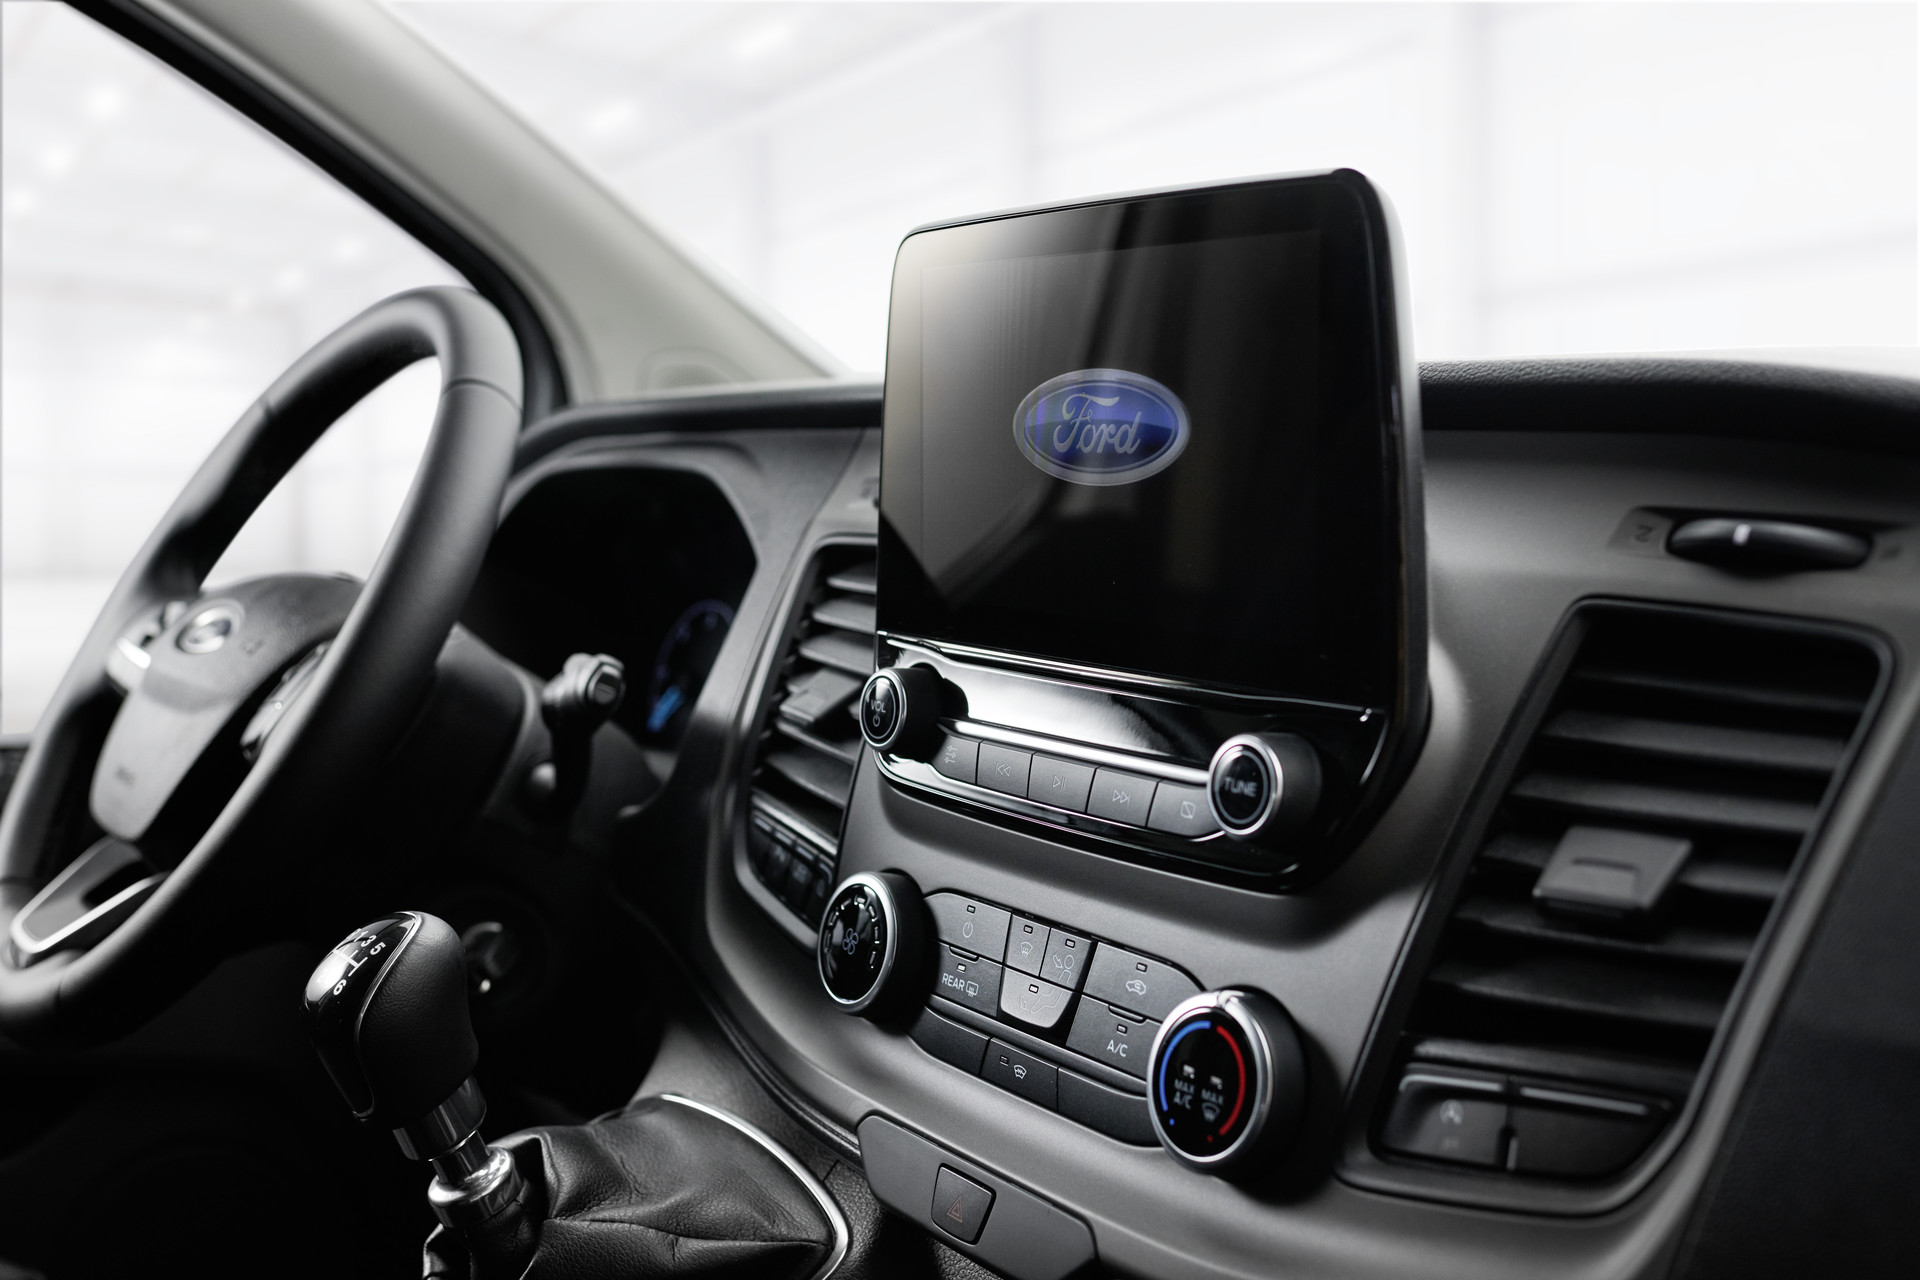 Sistema de áudio Ford com DAB+, câmara de marcha-atrás com transmissão de imagem no display multifunções, ar condicionado incl. filtro de pó e de pólen.